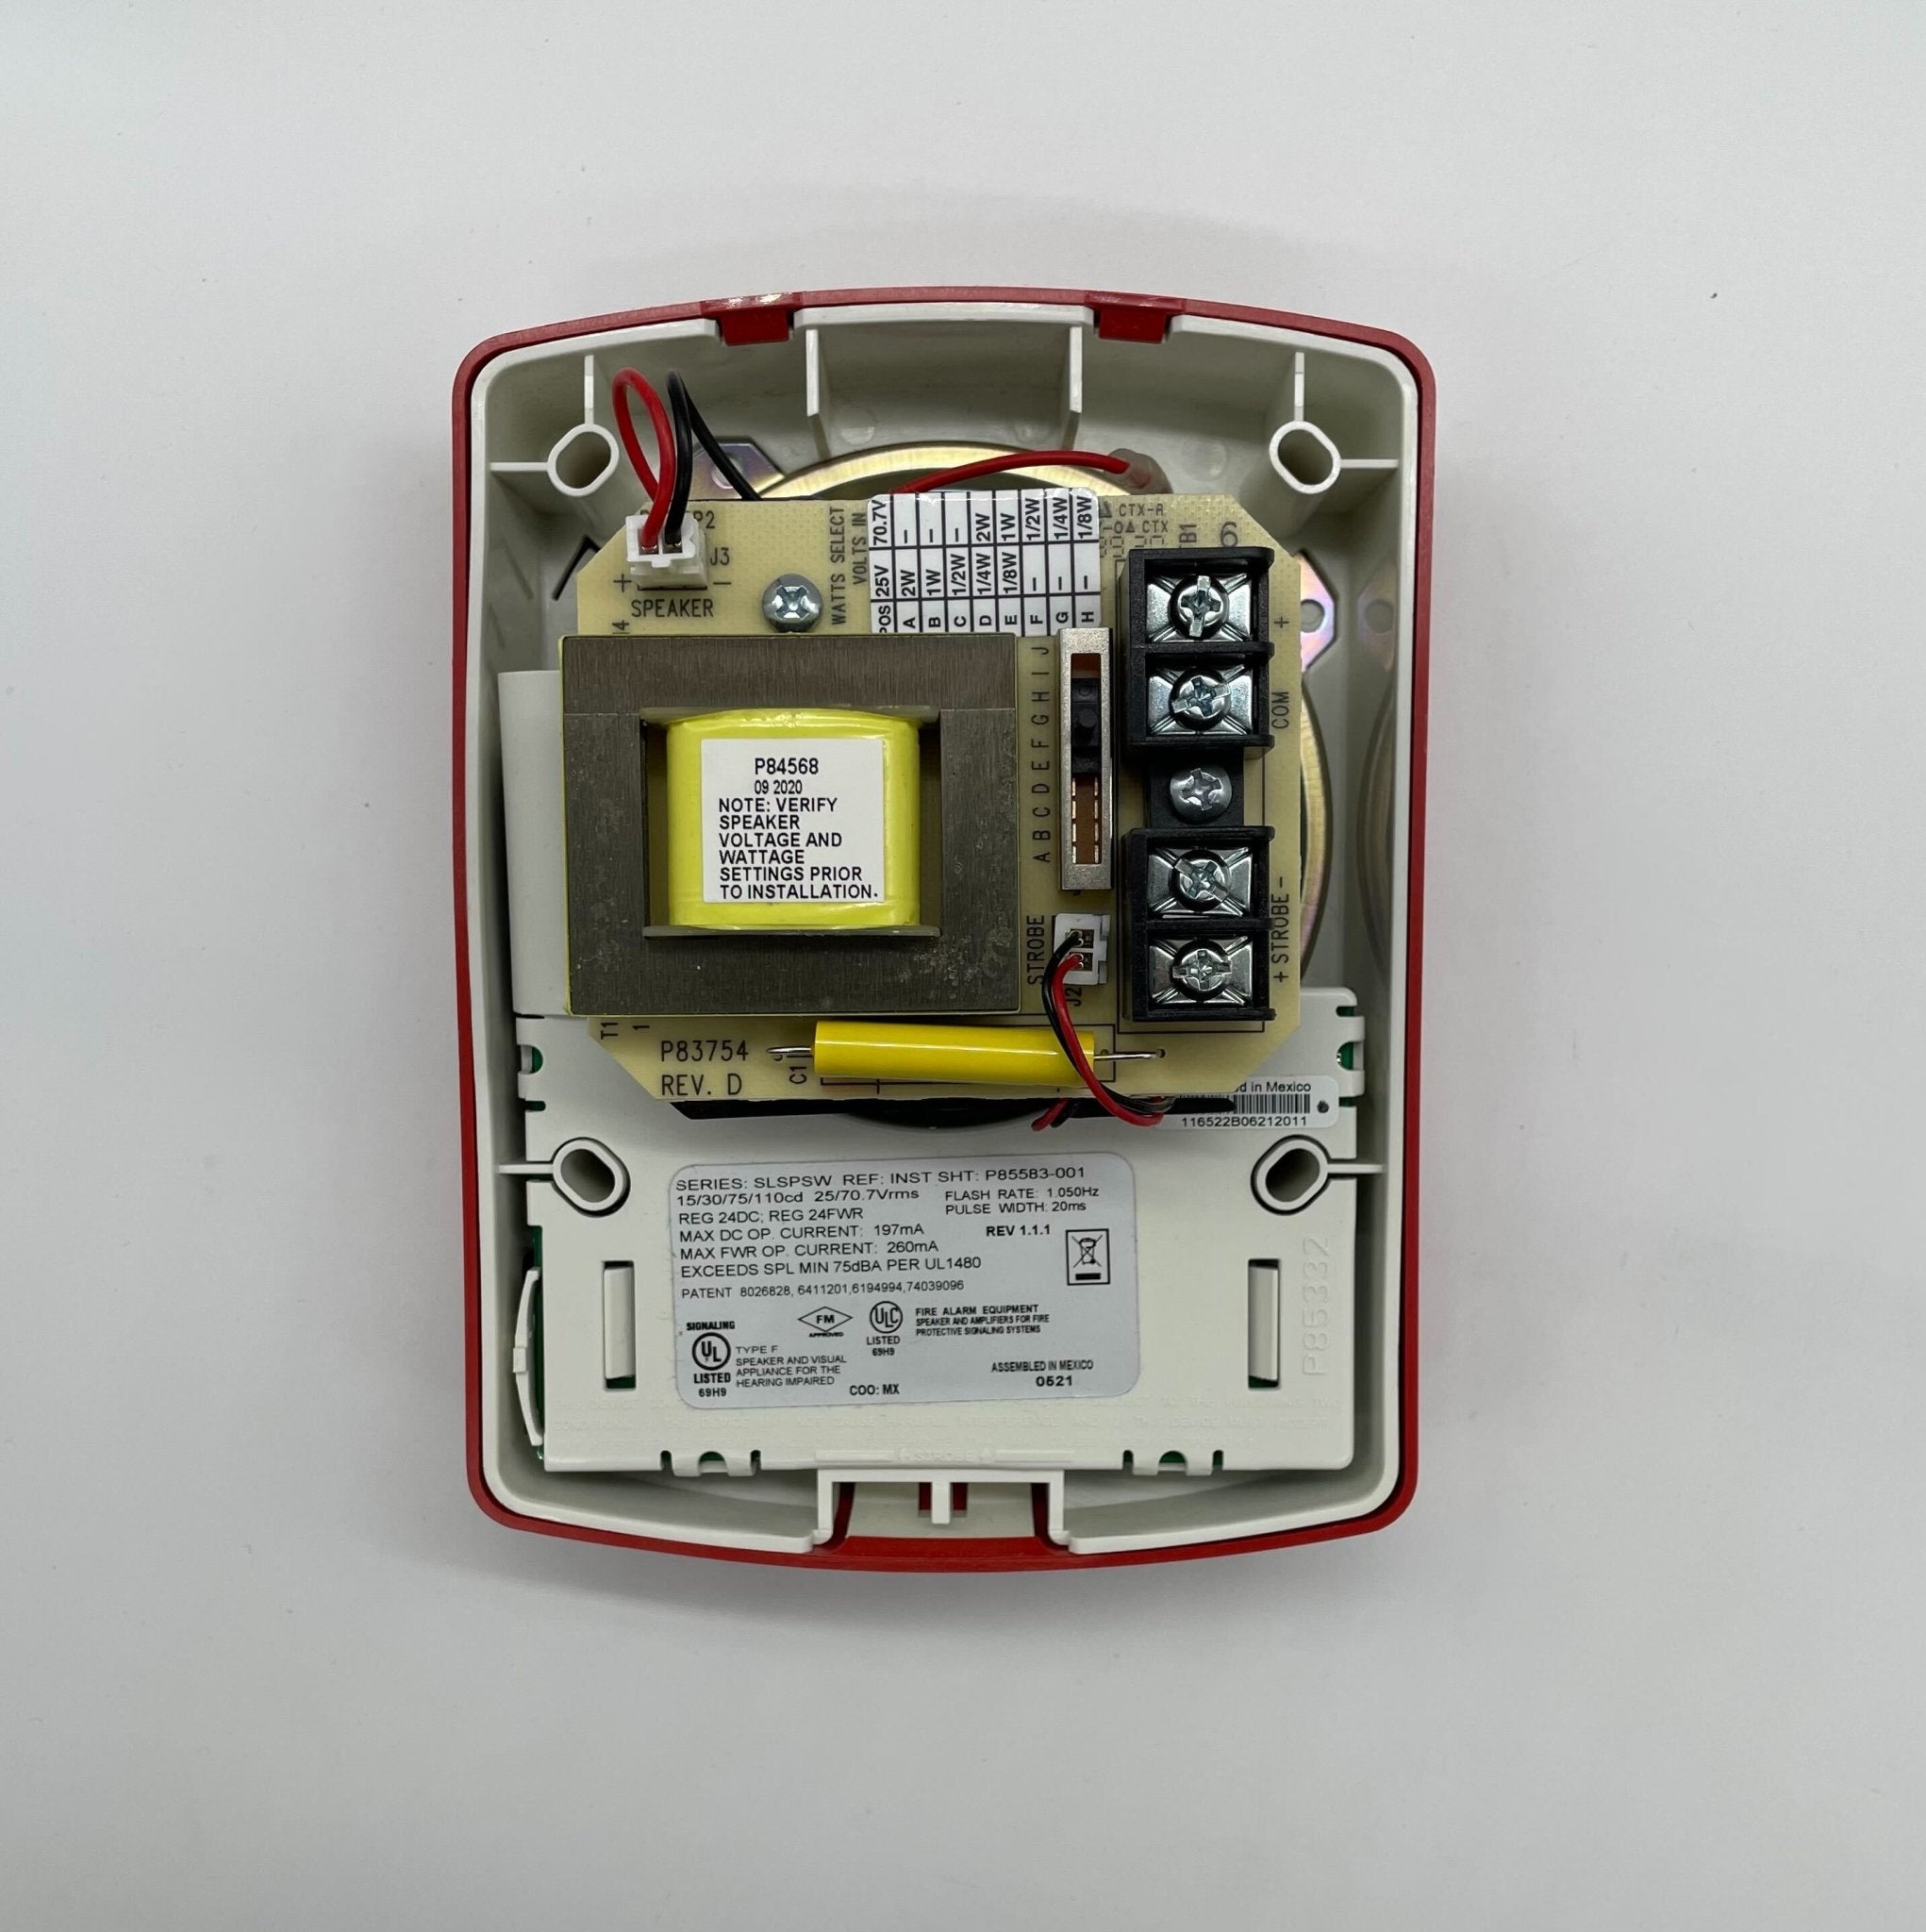 Siemens SLSPSWR-F - The Fire Alarm Supplier